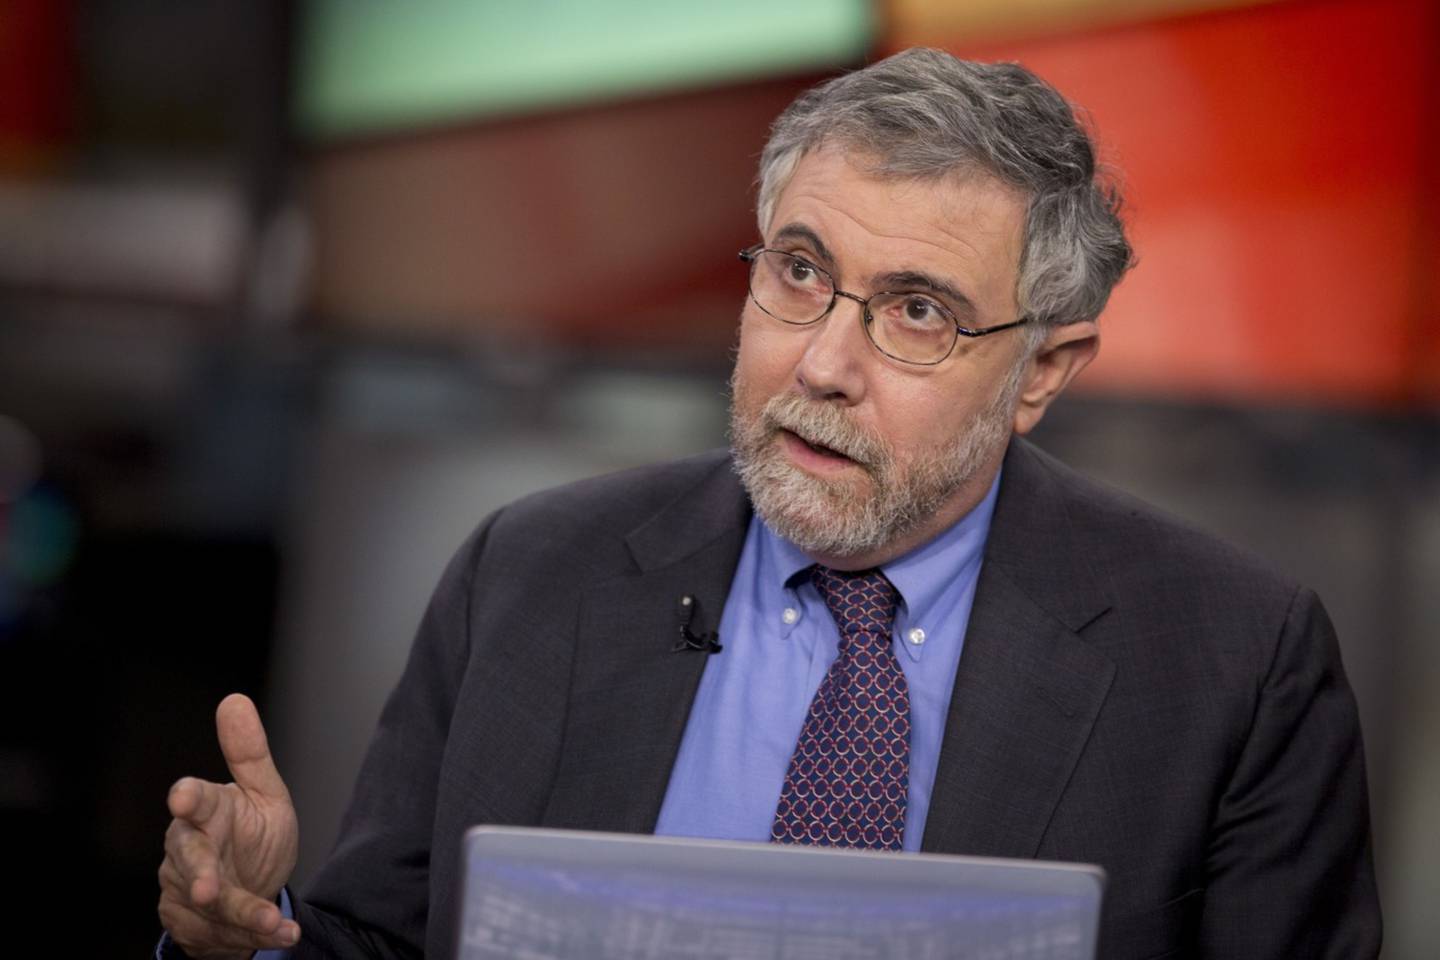 Paul Krugman, premio Nobel de Economía, observó que El Salvador no ha logrado promover efectivamente el bitcoin a pesar de haber impulsado "condiciones óptimas".